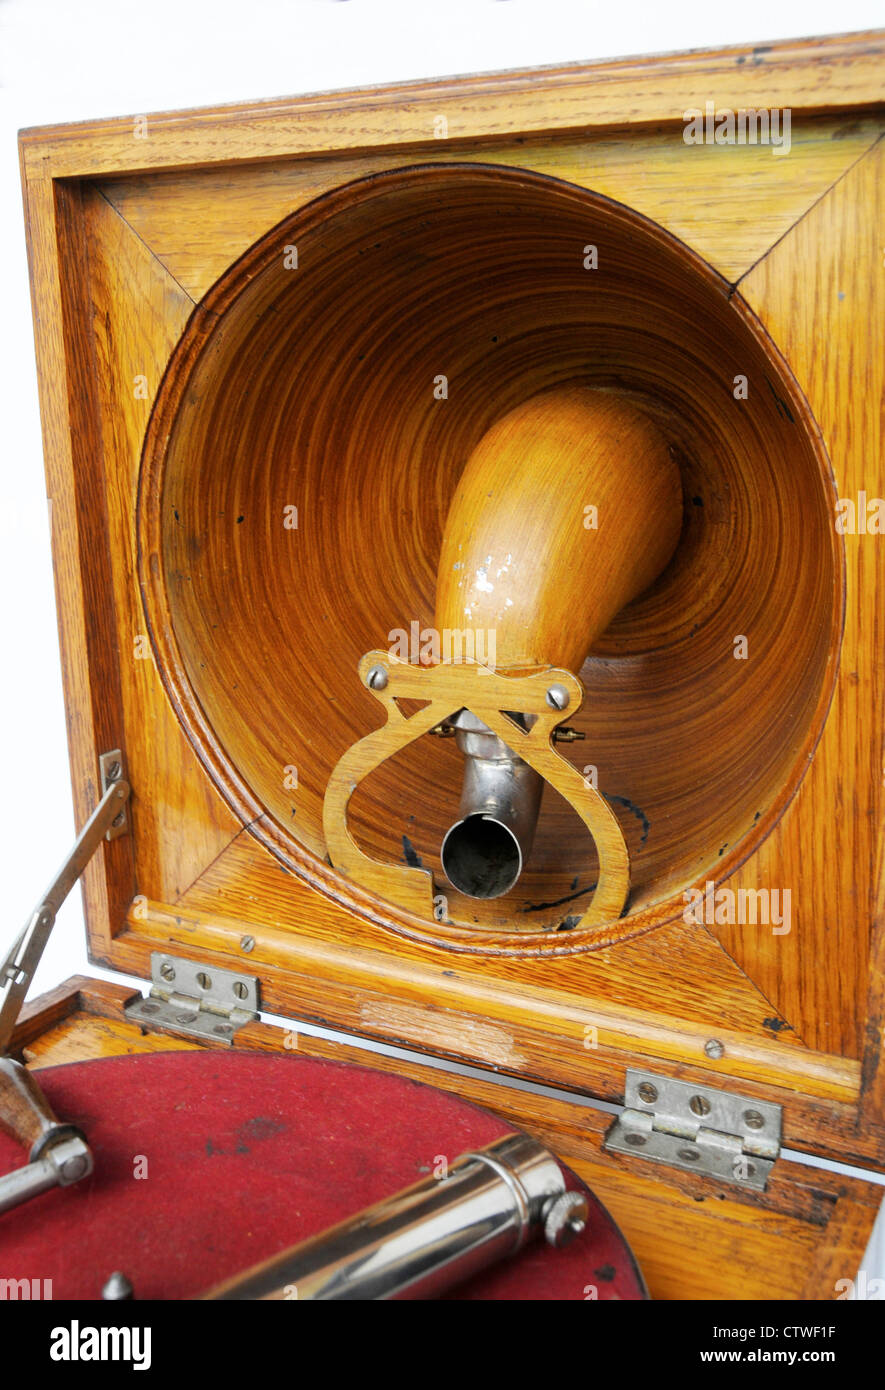 Pathe Saphone Elf fonógrafo gramófono antiguo Vintage 1910 es un gramófono francés utilizando un lápiz saphire. A partir de los archivos de prensa Servicio de retrato (vertical) Oficina de Prensa anteriormente Foto de stock